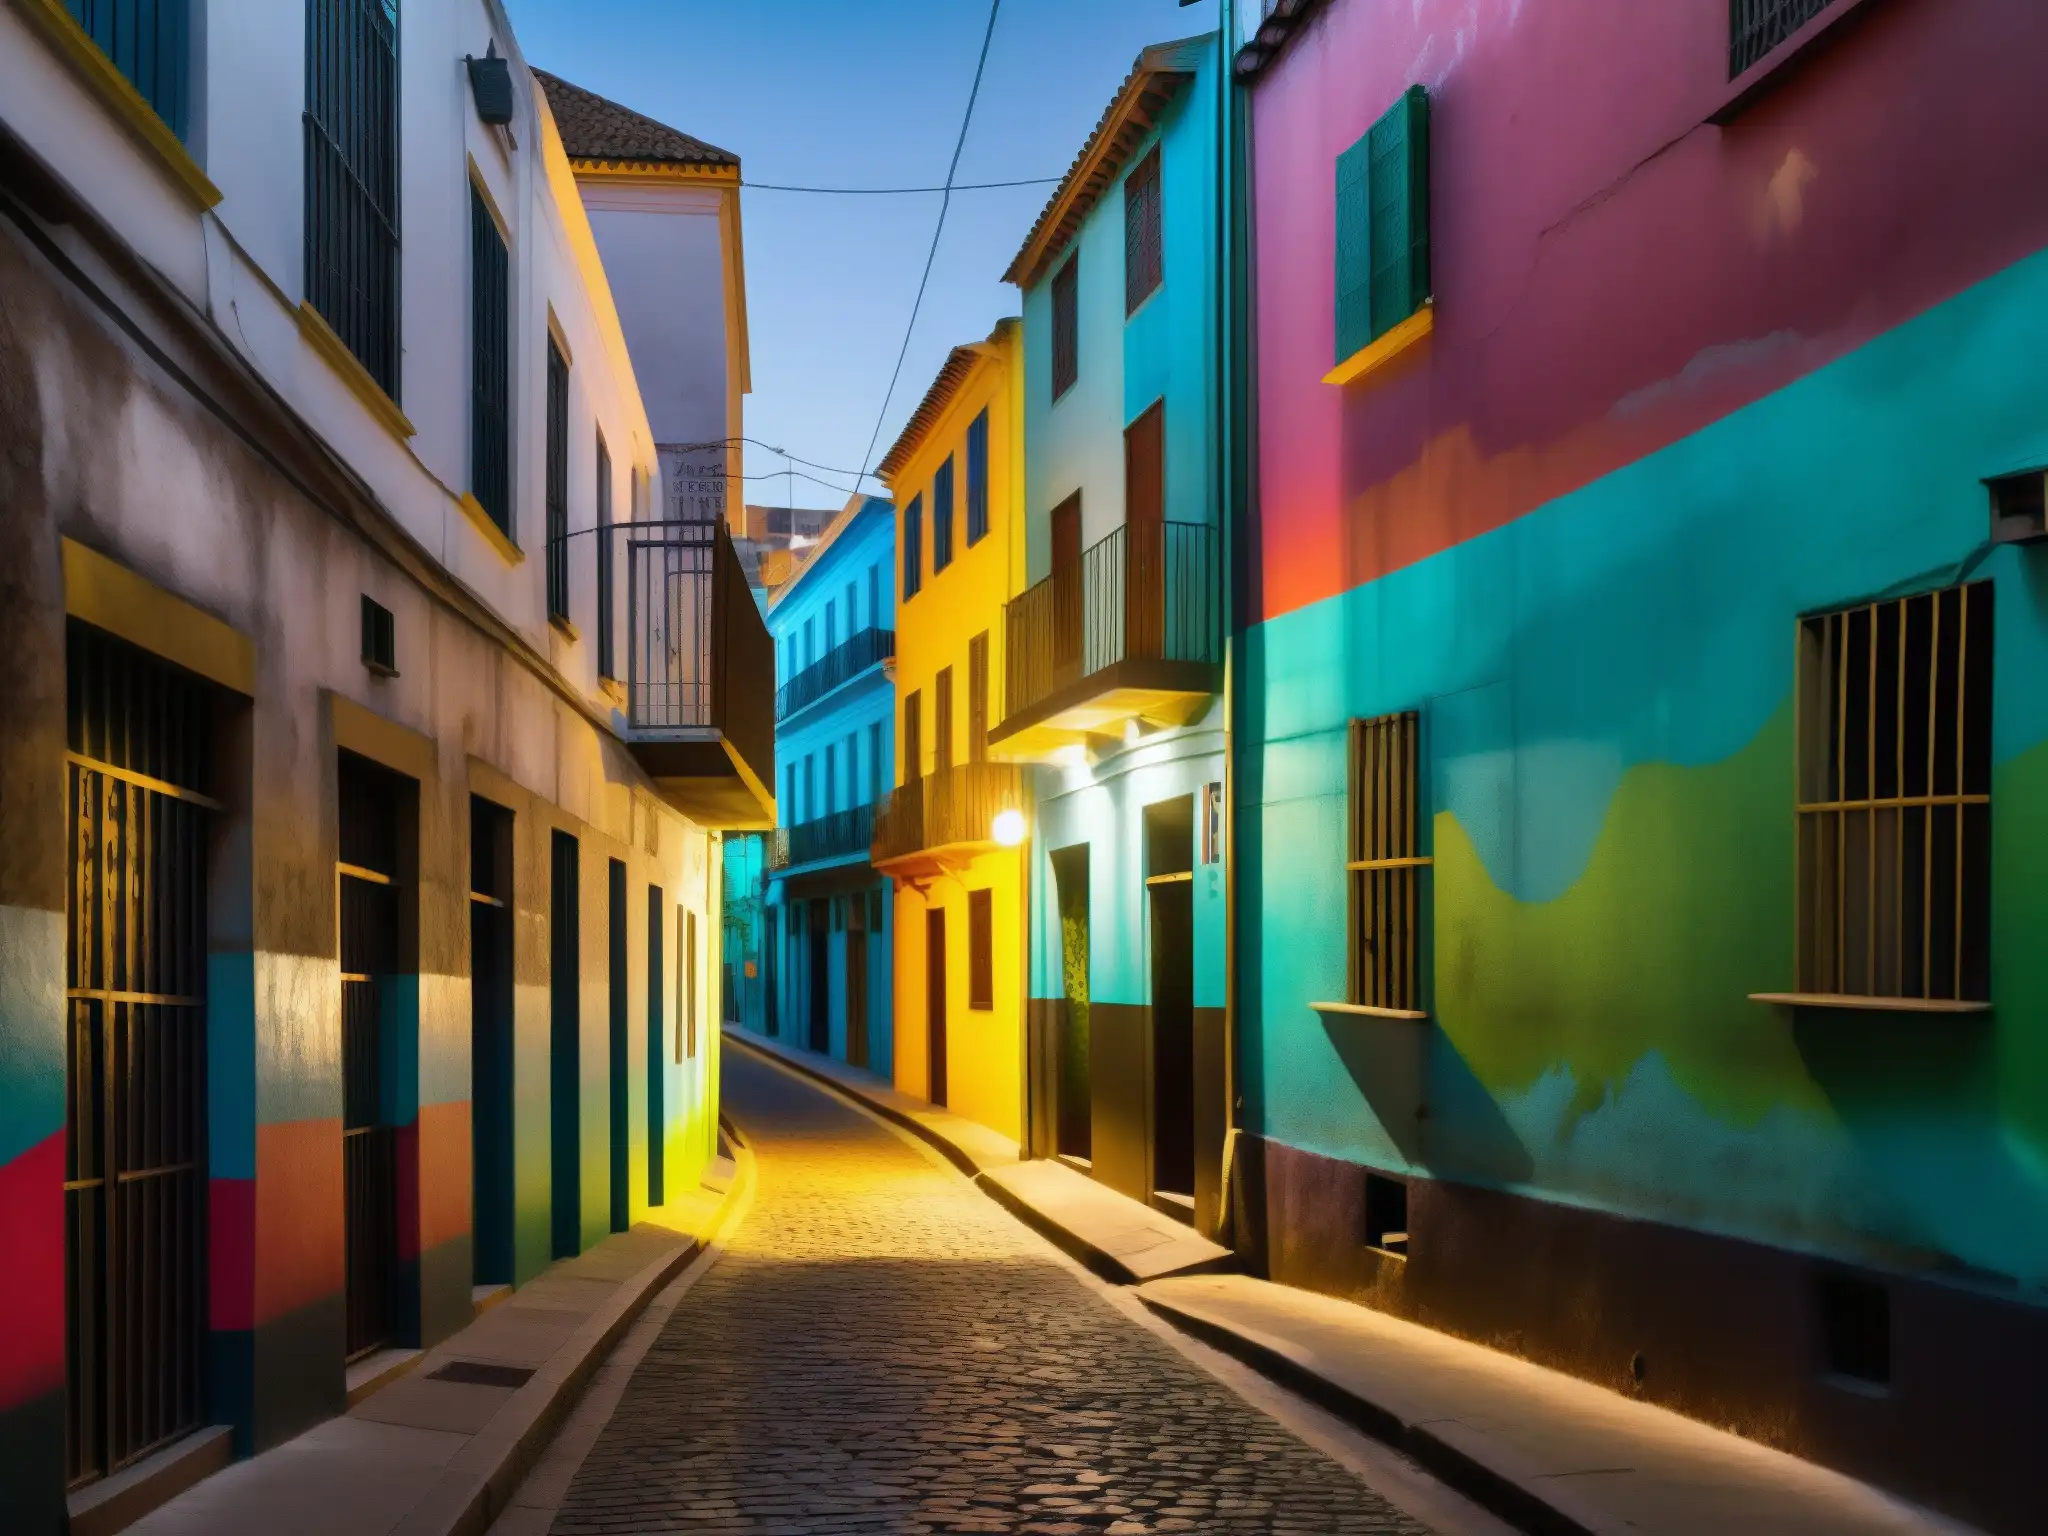 Un callejón misterioso y colorido en una ciudad de América del Sur, con arte callejero y una atmósfera de mitos y leyendas urbanas